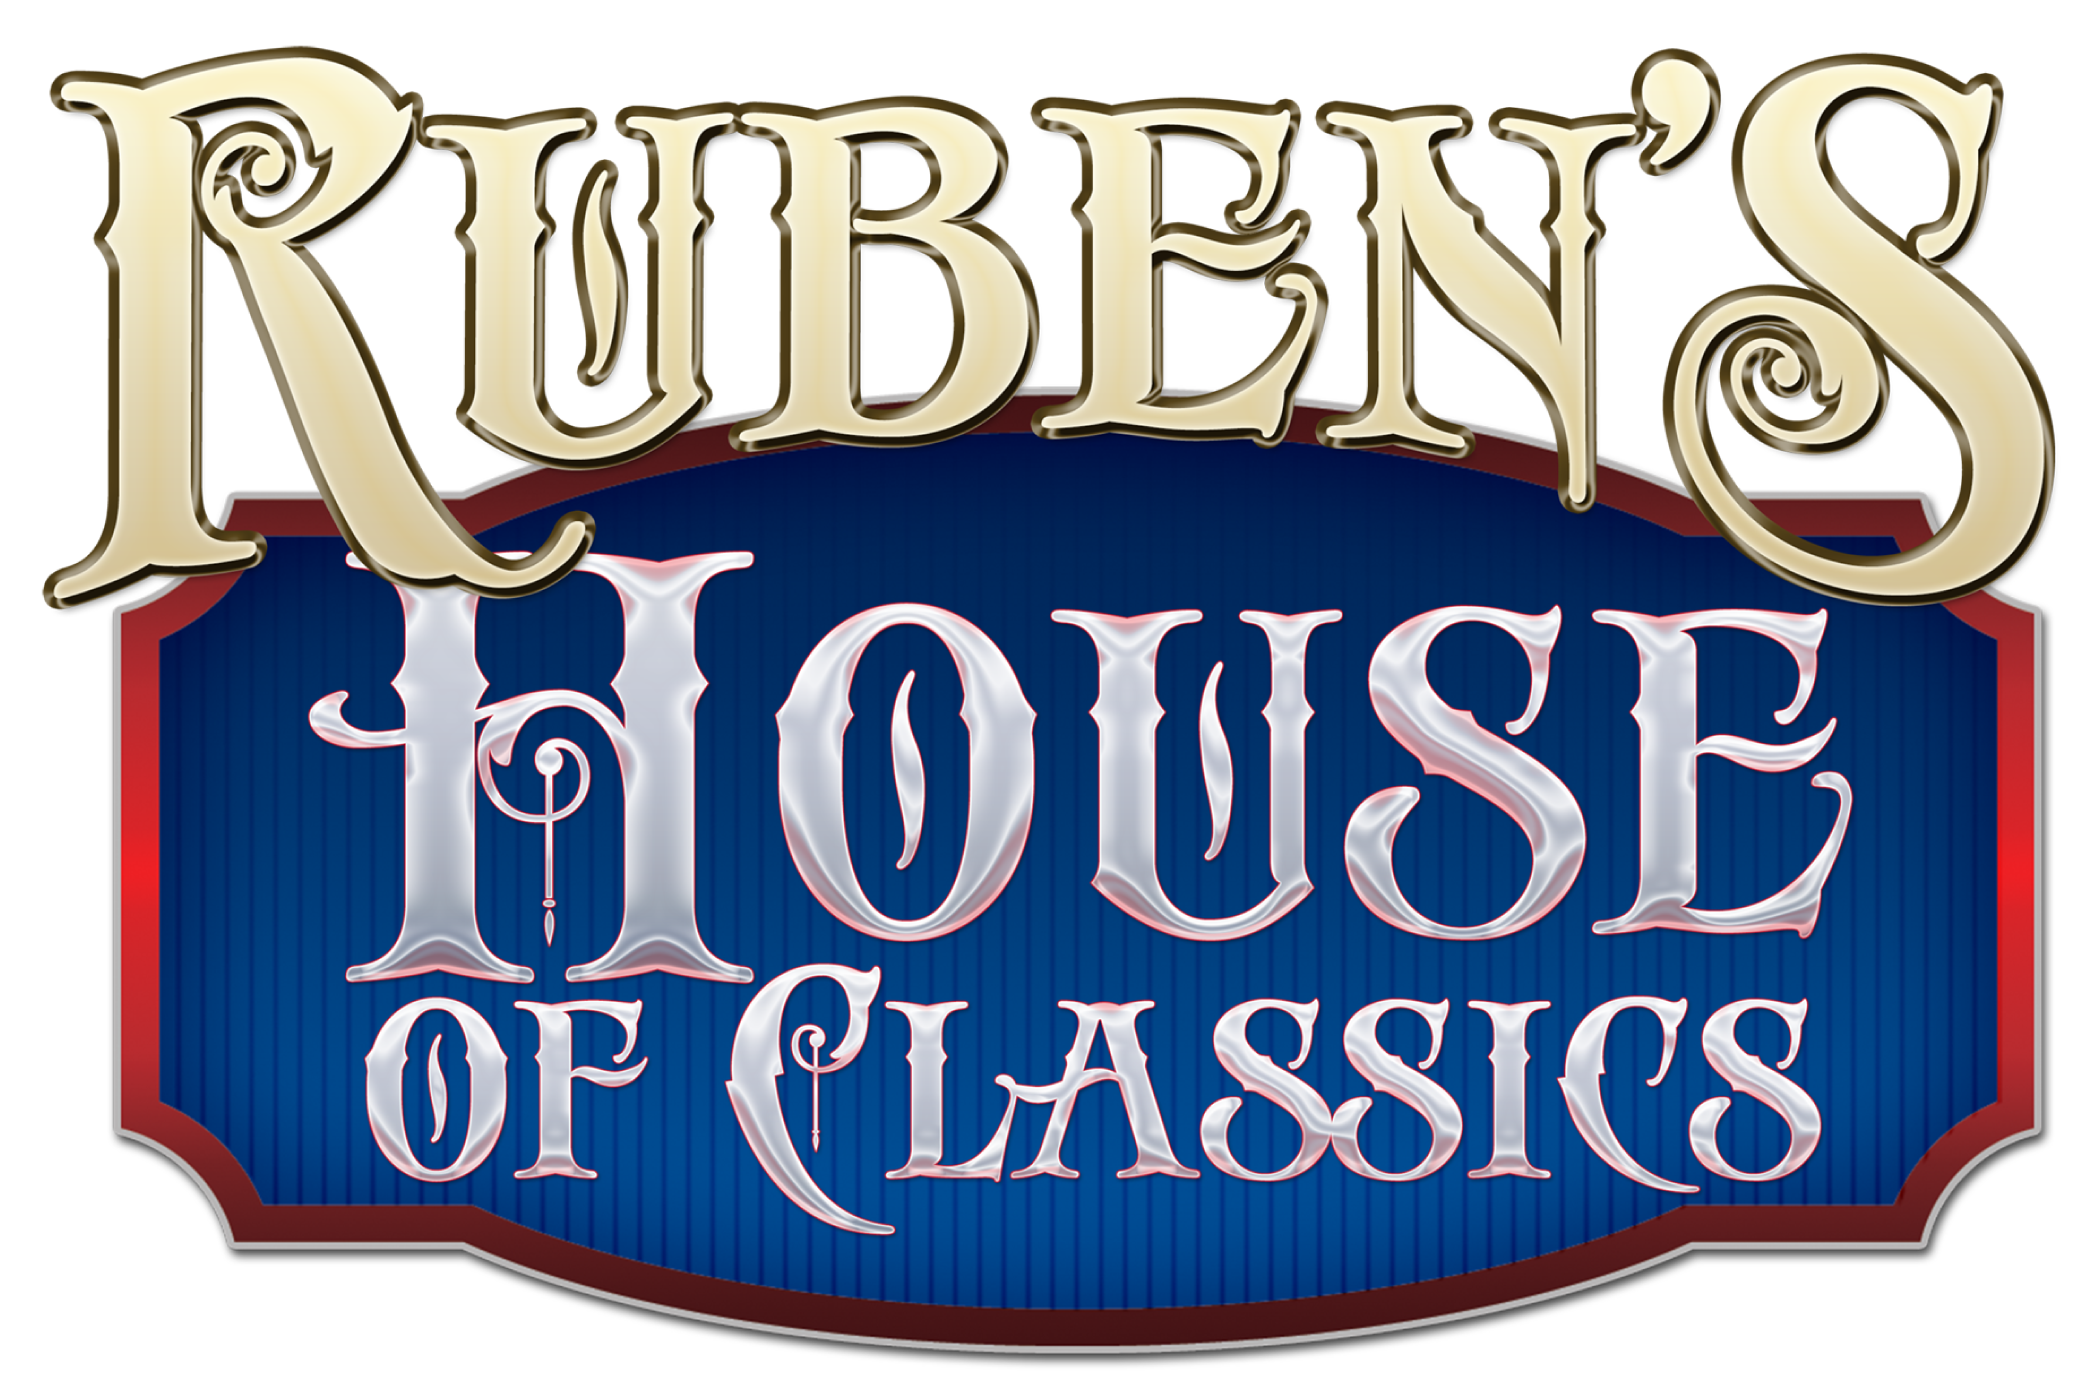 rubens house of classics logo image large